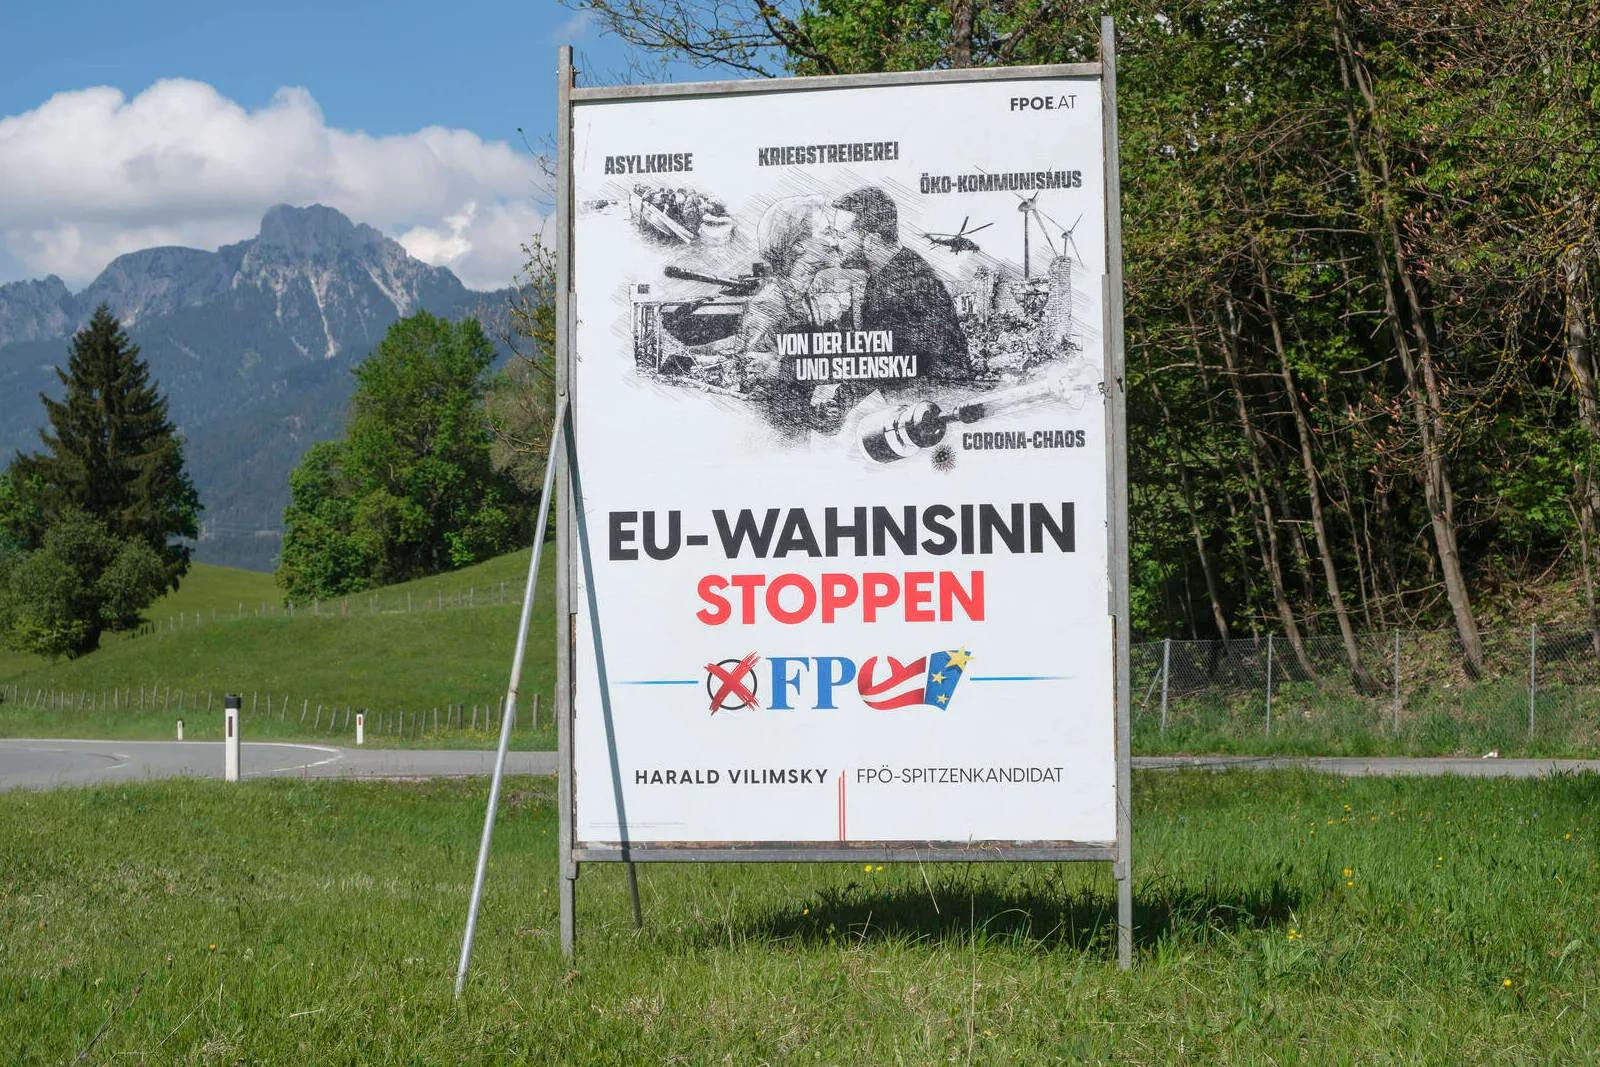 Europawahl-Umfrage: FPÖ weiter vorn, andere leicht verändert